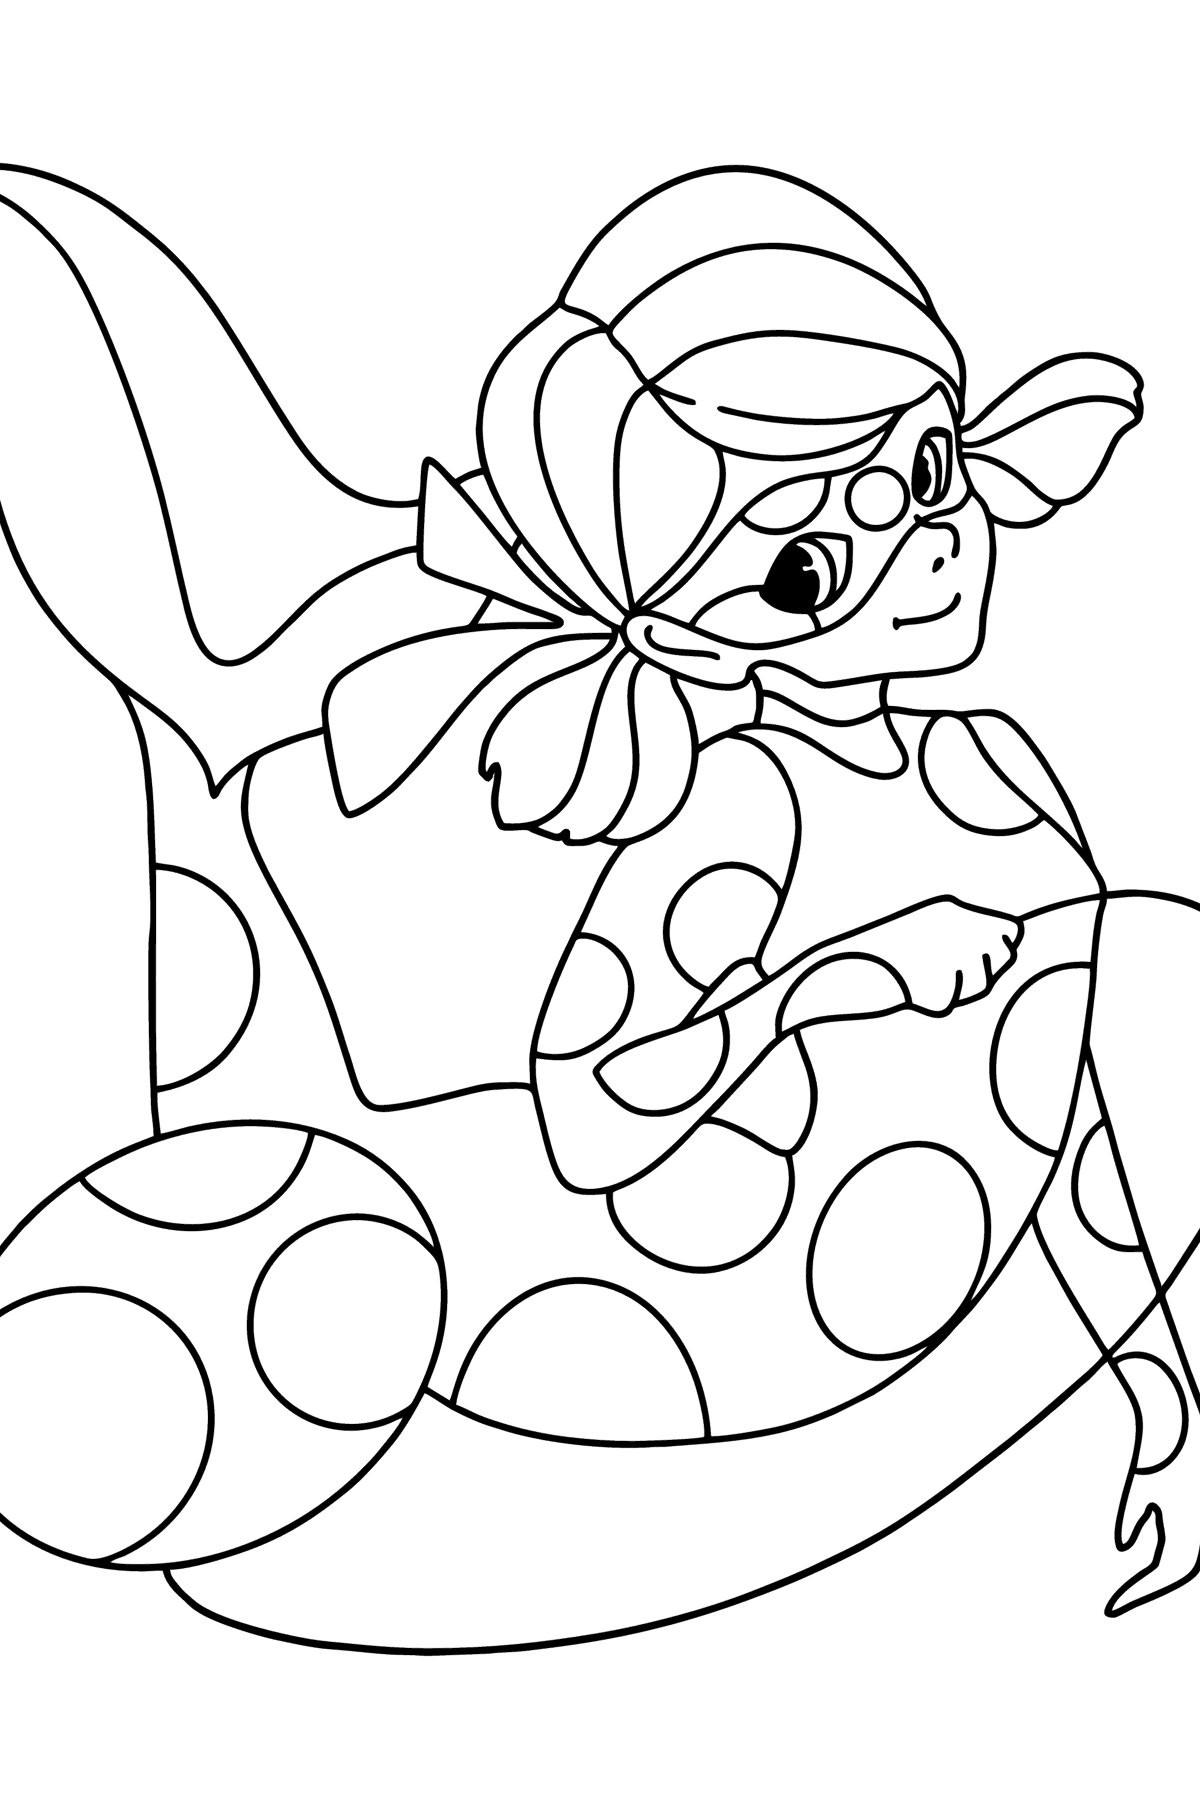 Desenho de Aqua Ladybug para colorir - Imagens para Colorir para Crianças